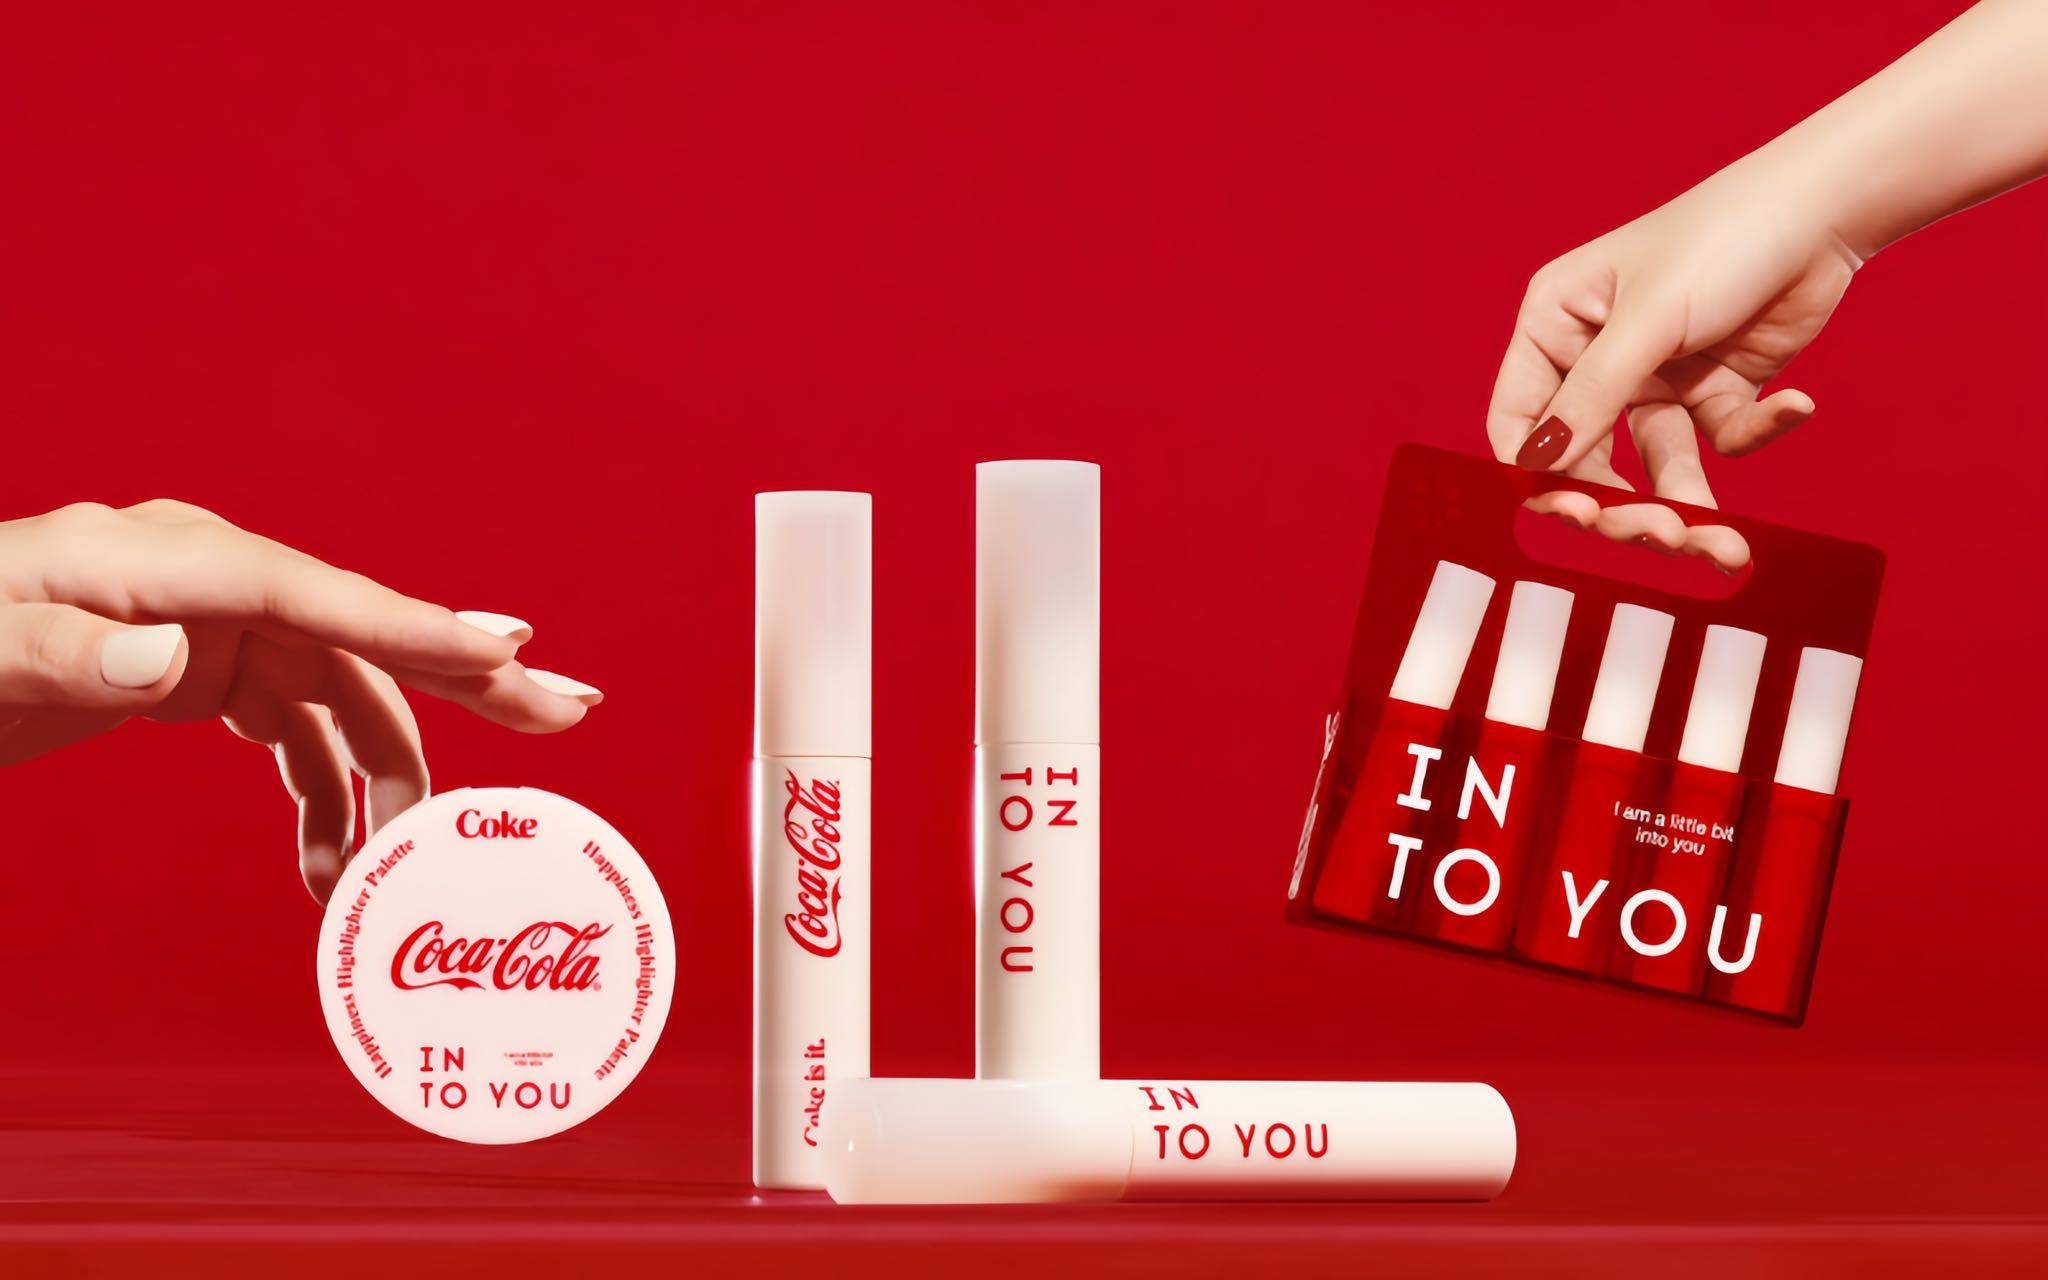 INTO YOU 和可口可乐合作推出快乐系列彩妆